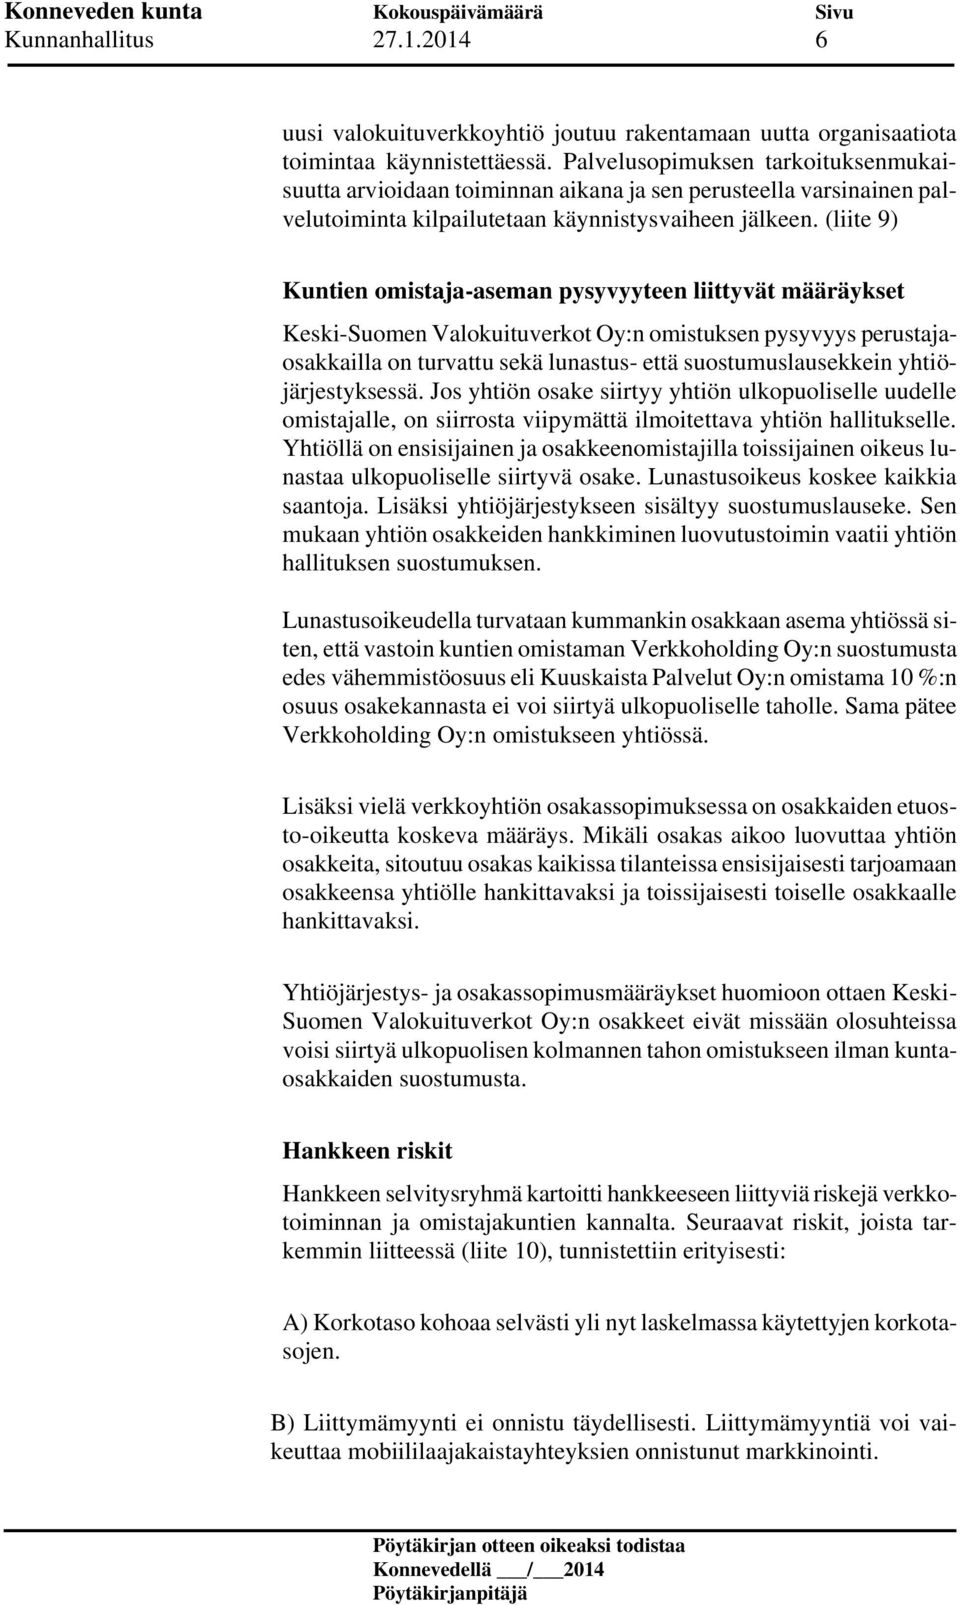 (liite 9) Kuntien omistaja-aseman pysyvyyteen liittyvät määräykset Keski-Suomen Valokuituverkot Oy:n omistuksen pysyvyys perustajaosakkailla on turvattu sekä lunastus- että suostumuslausekkein